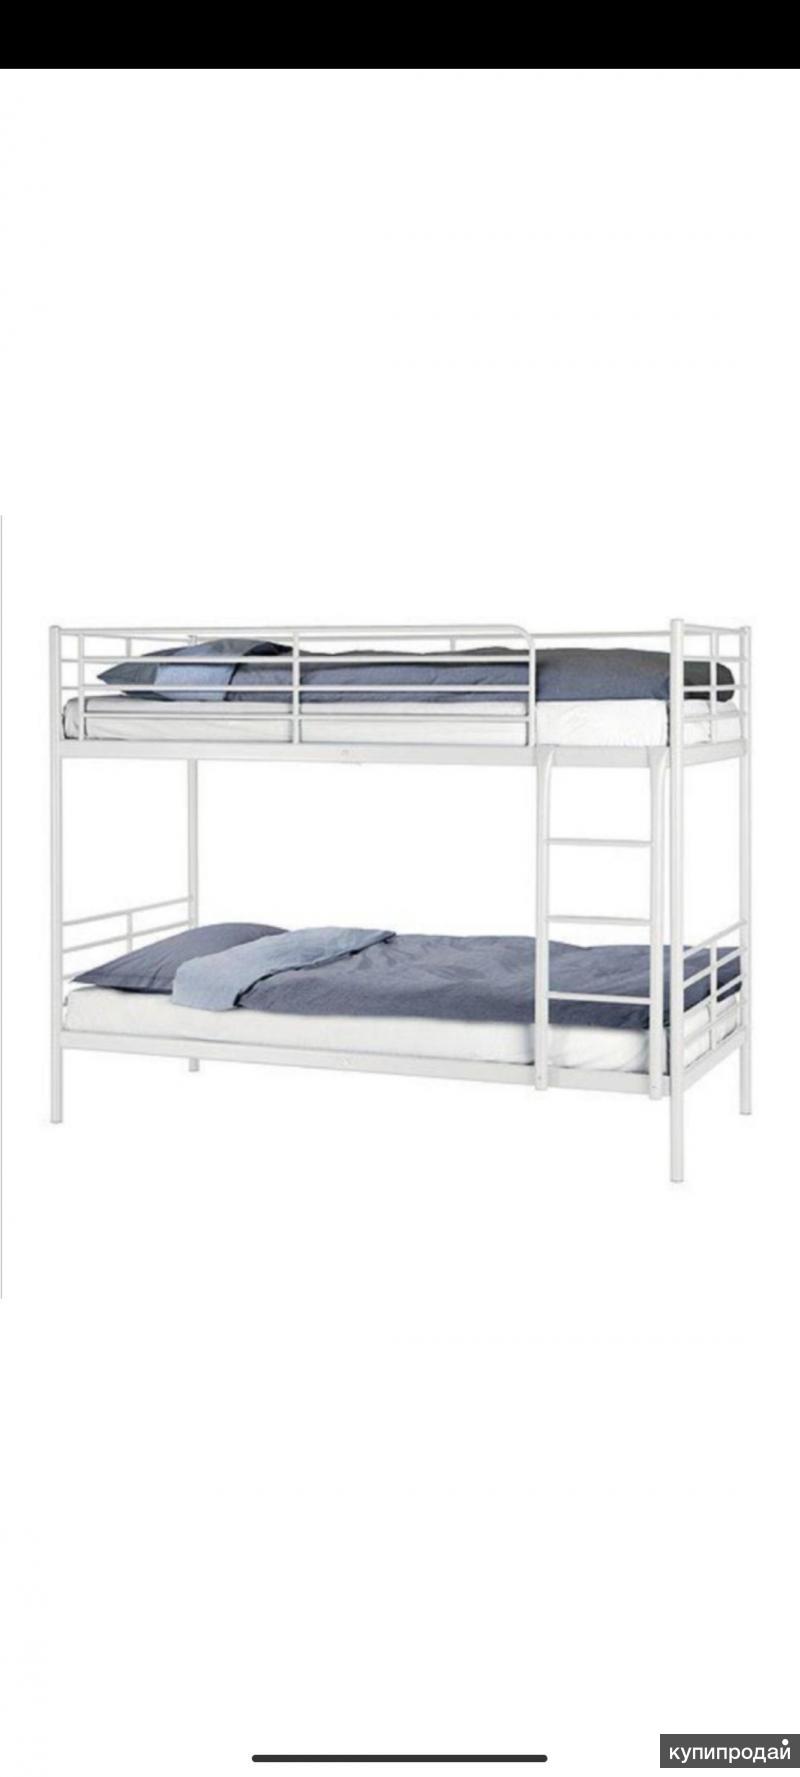 Ikea кровать двухъярусная металлическая Тромсо инструкция